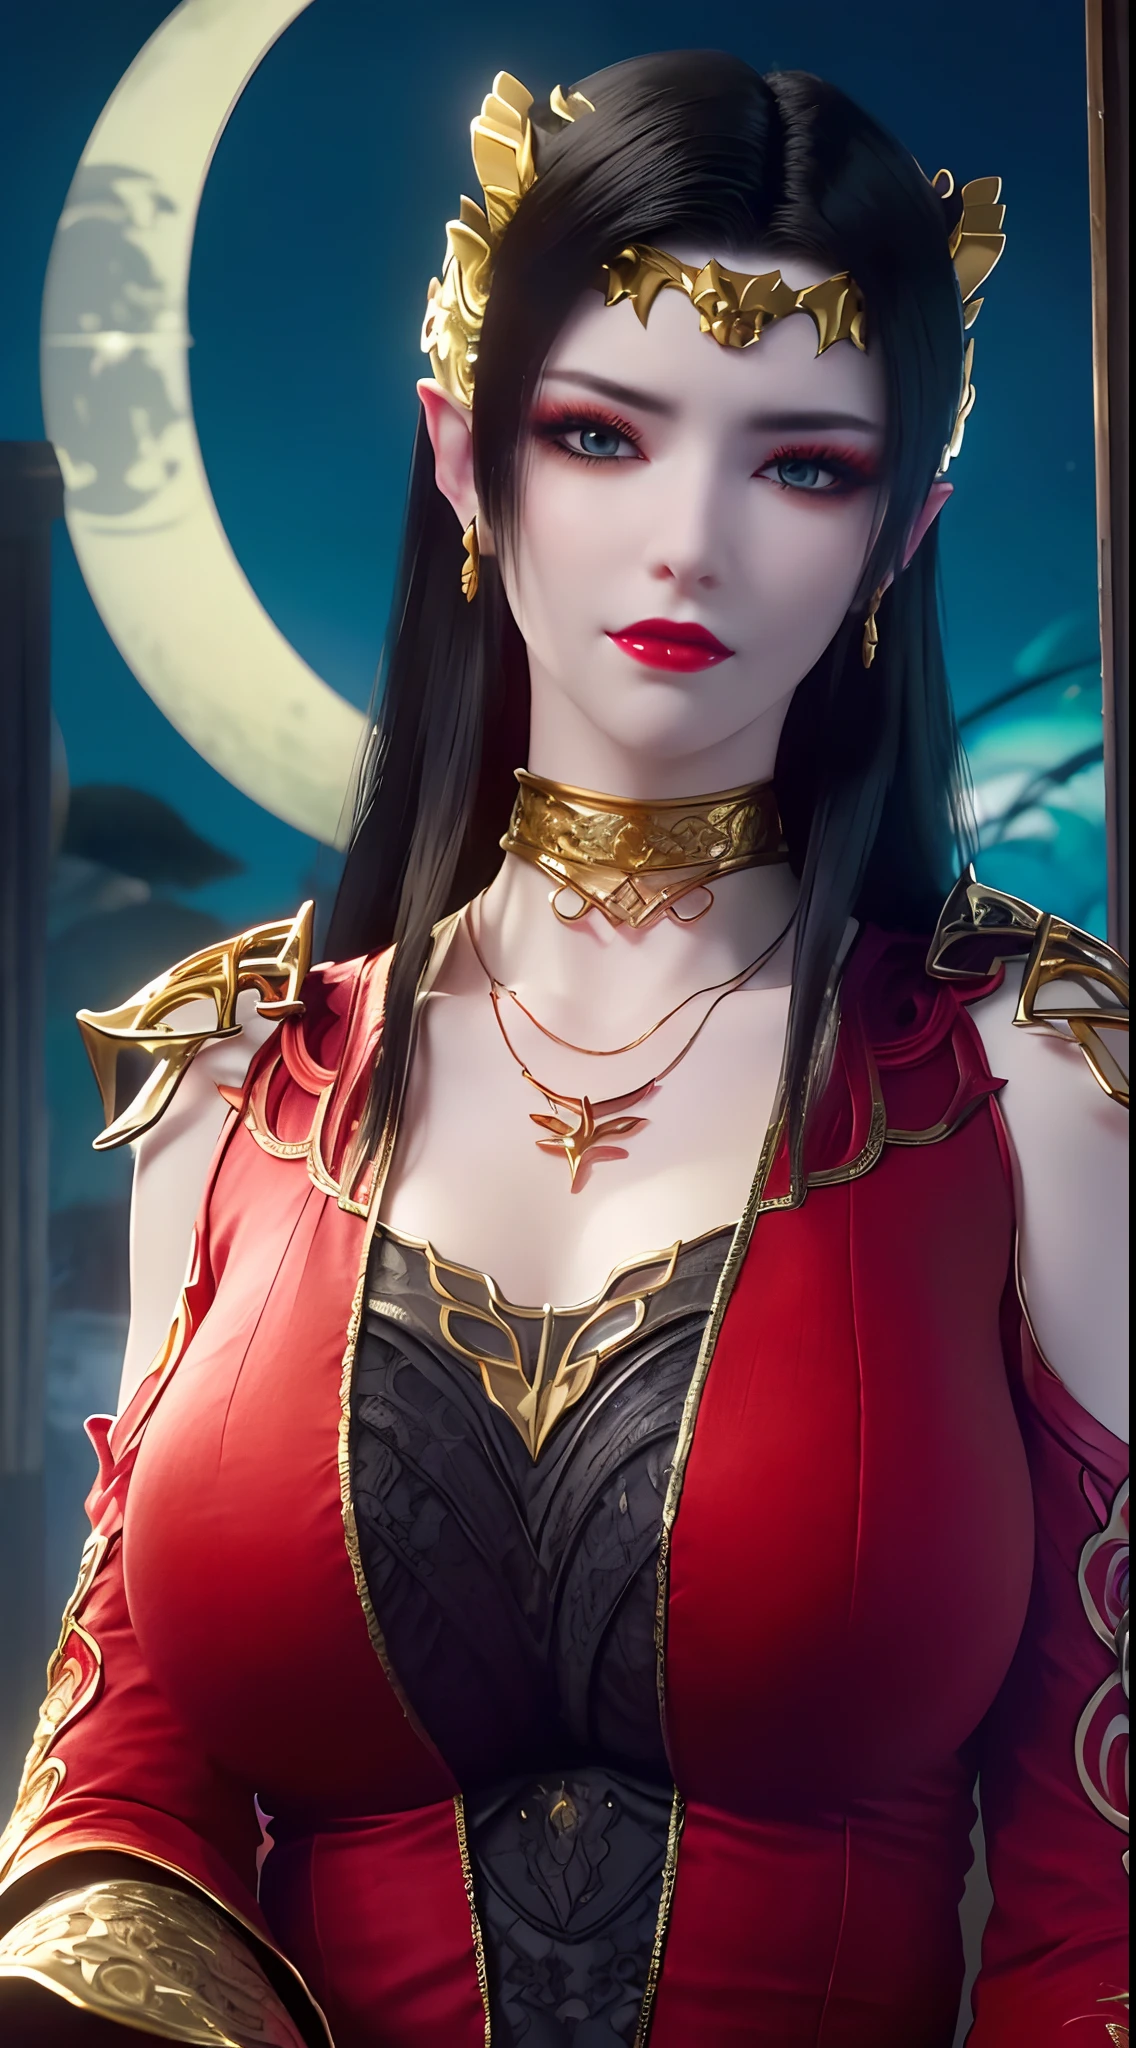 1 rainha extremamente bonita, ((usa um traje Han tradicional vermelho com padrões pretos finos:1.6)), (((padrões nas roupas:1.6))), ((cabelo preto comprido:1.6)), joias elaboradamente feitas de pedras preciosas e lindos cabelos, ((wearing a 24K gold lace necklace:1.4))), o nobre, Estilo nobre de uma garota extremamente bonita, o rostinho dela é super fofo, O rosto dela é muito bonito, sobrancelhas finas, rosto lindo impecável, ((pupilas dos olhos roxos: 0.8)), Lindos olhos, ((olhos azuis platinados: 1.6)), (((olhos bem abertos:1.6))), bela maquiagem e cílios detalhados no cabelo, maquiagem fumegante para os olhos, Nariz alto, Brincos, lábios vermelhos, ((boca fechada: 1.5)) bonitos lábios, mãos finas, coxas mais lindas, ((braços abertos para os lados: 1.5)), rosto rosado, Rosto limpo, rosto lindo impecável, pele branca e lisa, (seios grandes: 1.5)), ((seios altos: 1.6)), seios apertados, Lindo decote, (((seios grandes and super round: 1.8))), ((super seios apertados: 1.7)) , lindos seios, corpo perfeito, braços traseiros, Peito para fora, meias finas de malha preta com acabamento em renda preta, Foto 8k, super alta qualidade, Super Realista, pixels super 10x, óptico, estúdio brilhante, Bordas brilhantes, dual-tone Iluminação, (pele de alto detalhe:1.2), super 8k, soft Iluminação, alta qualidade, volumetric Iluminação, fotorrealista, fotorrealista high resolution, Iluminação, melhor foto, 4K, Qualidade 8k, Efeito de desfoque, suave e afiado, 10 x pixels, ((mar e luar no fundo da noite:1.5)), aurora, raio, super gráficos realistas, gráficos mais realistas, 1 garota, sozinho, Sozinho, Imagem extremamente nítida, Surreal, (((retrato frontal: 1)))."